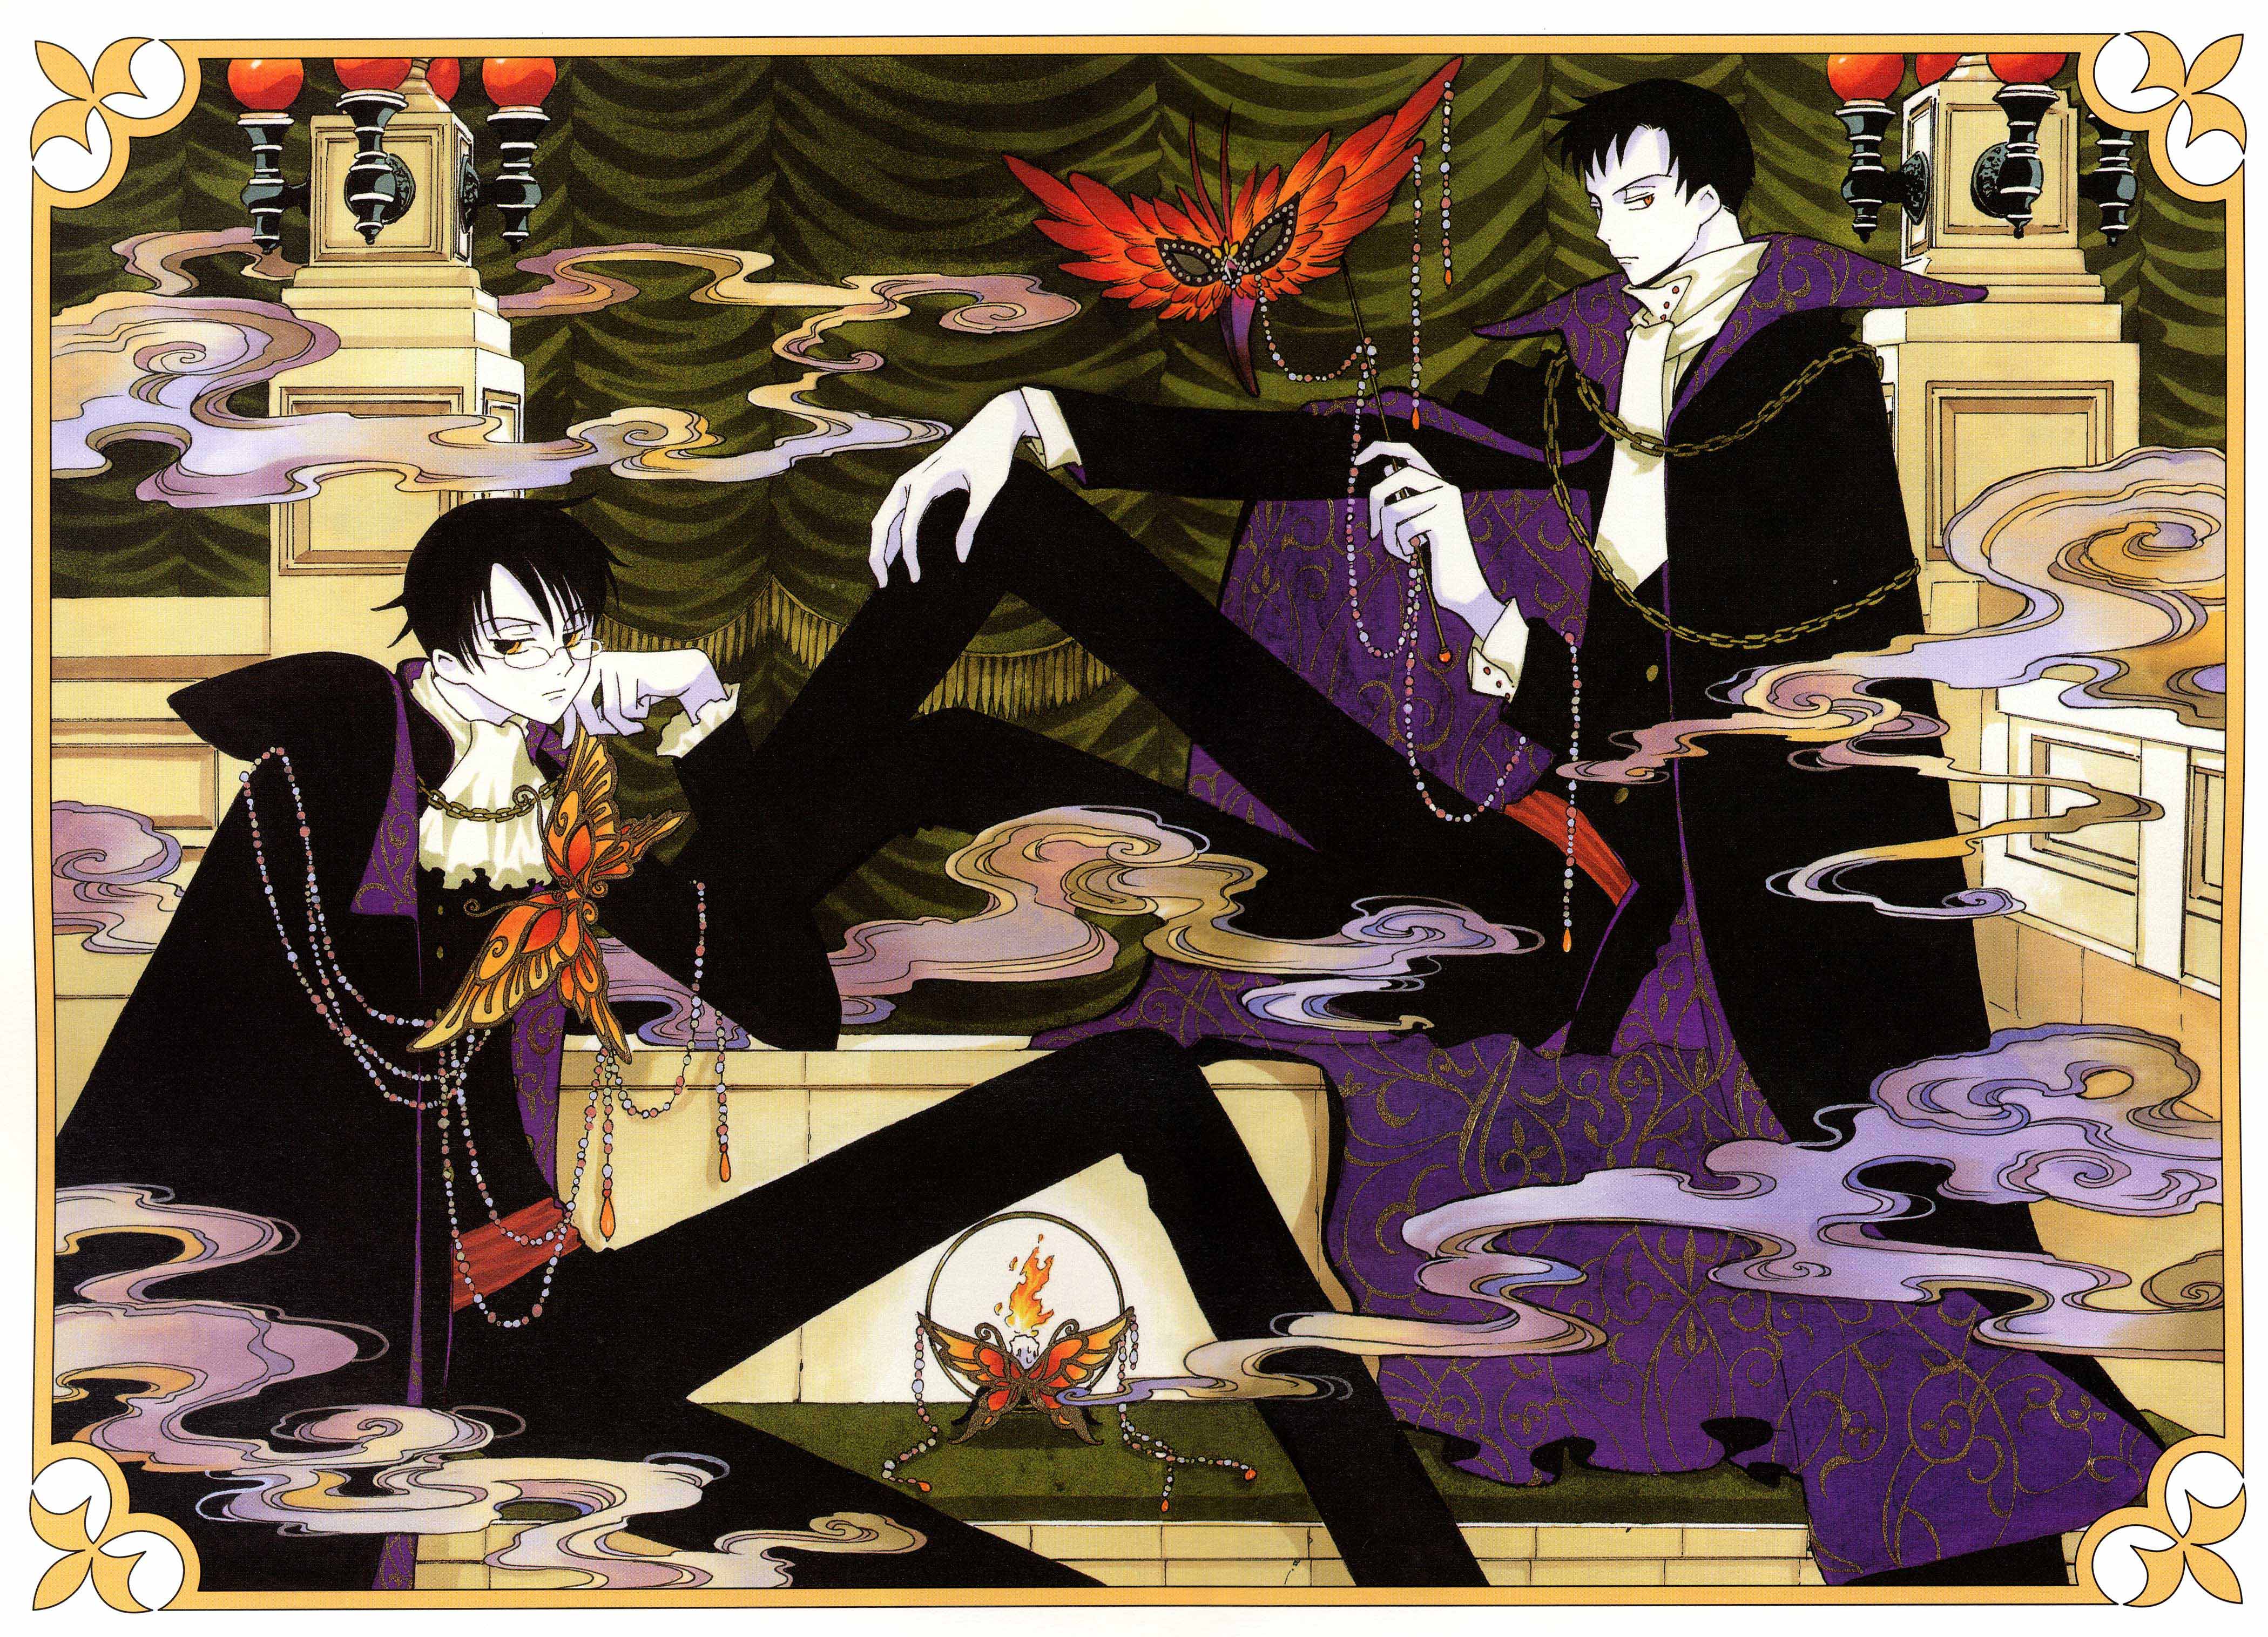 Kimihiro Watanuki • Tsubasa: Reservoir Chronicle • Absolute Anime